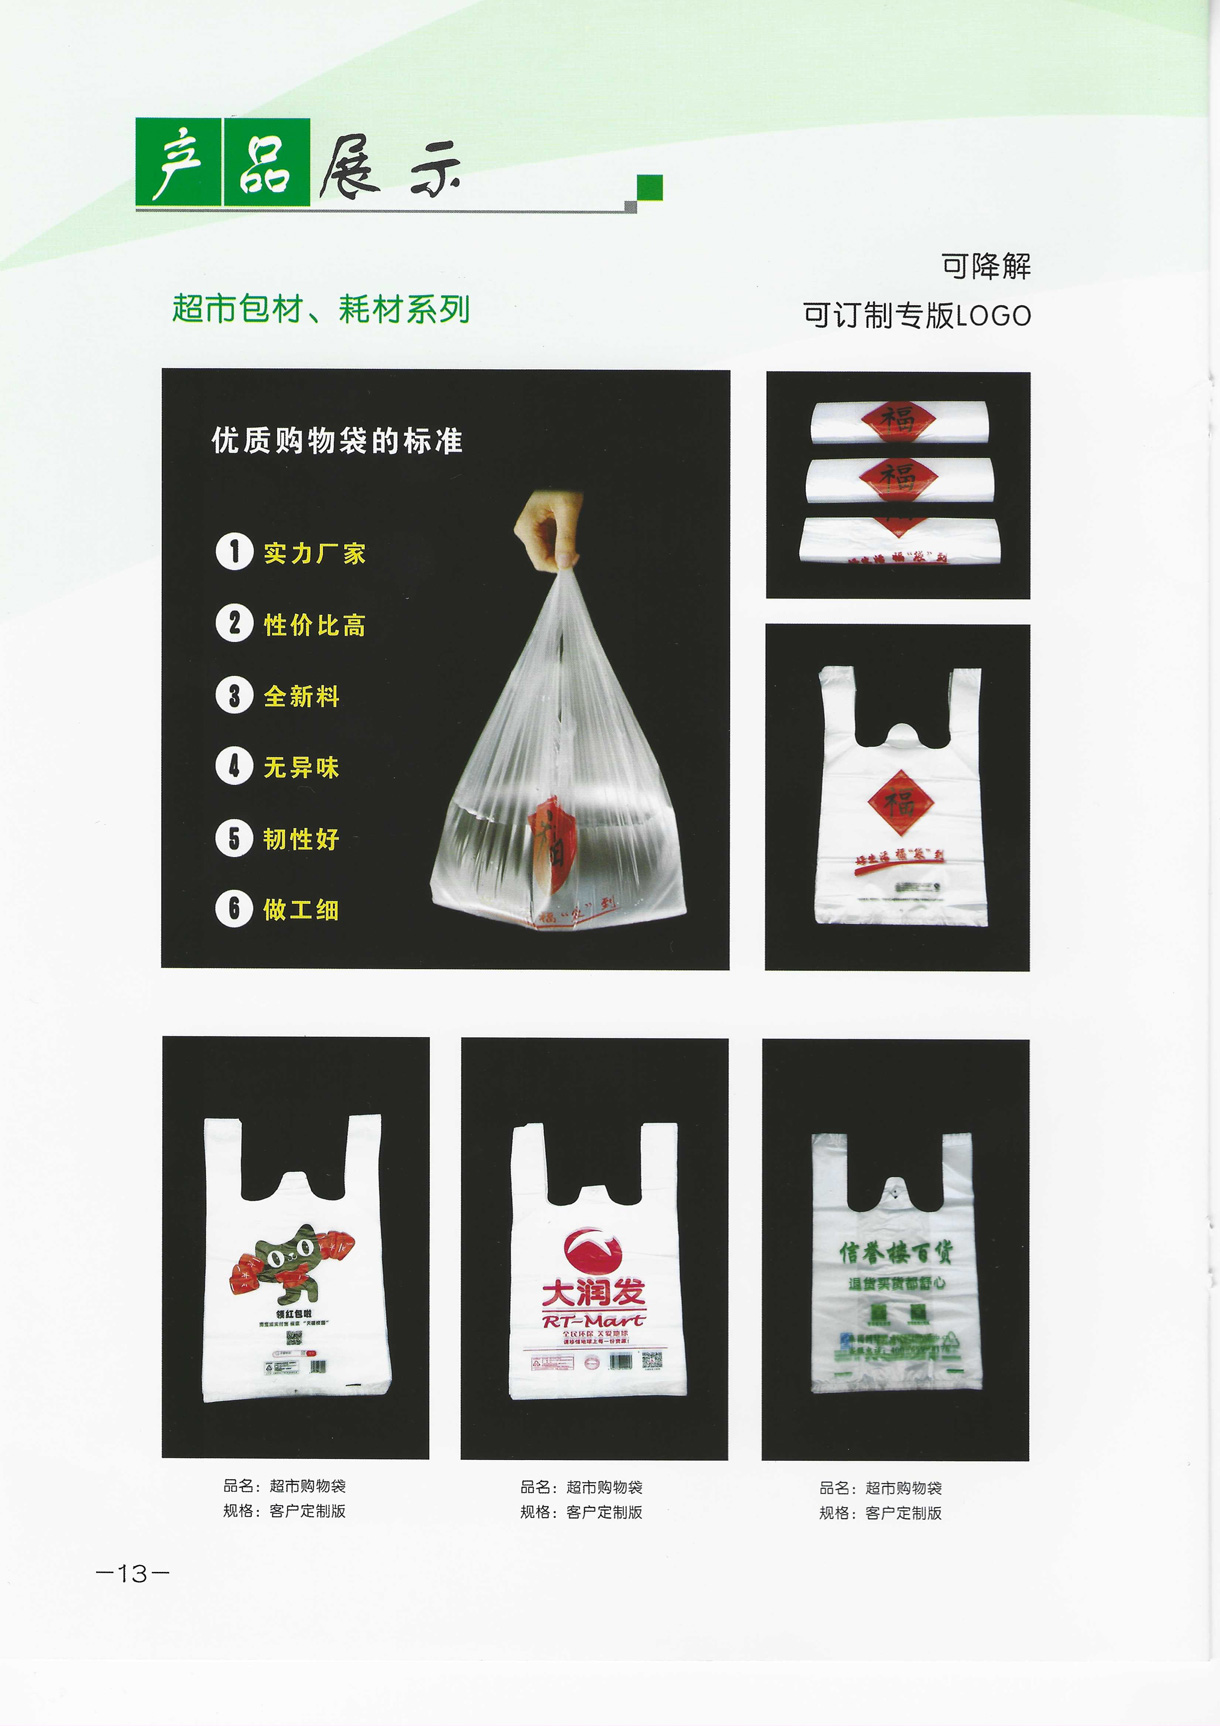 可降解背心袋由内蒙古洁天下塑业科技有限公司提供